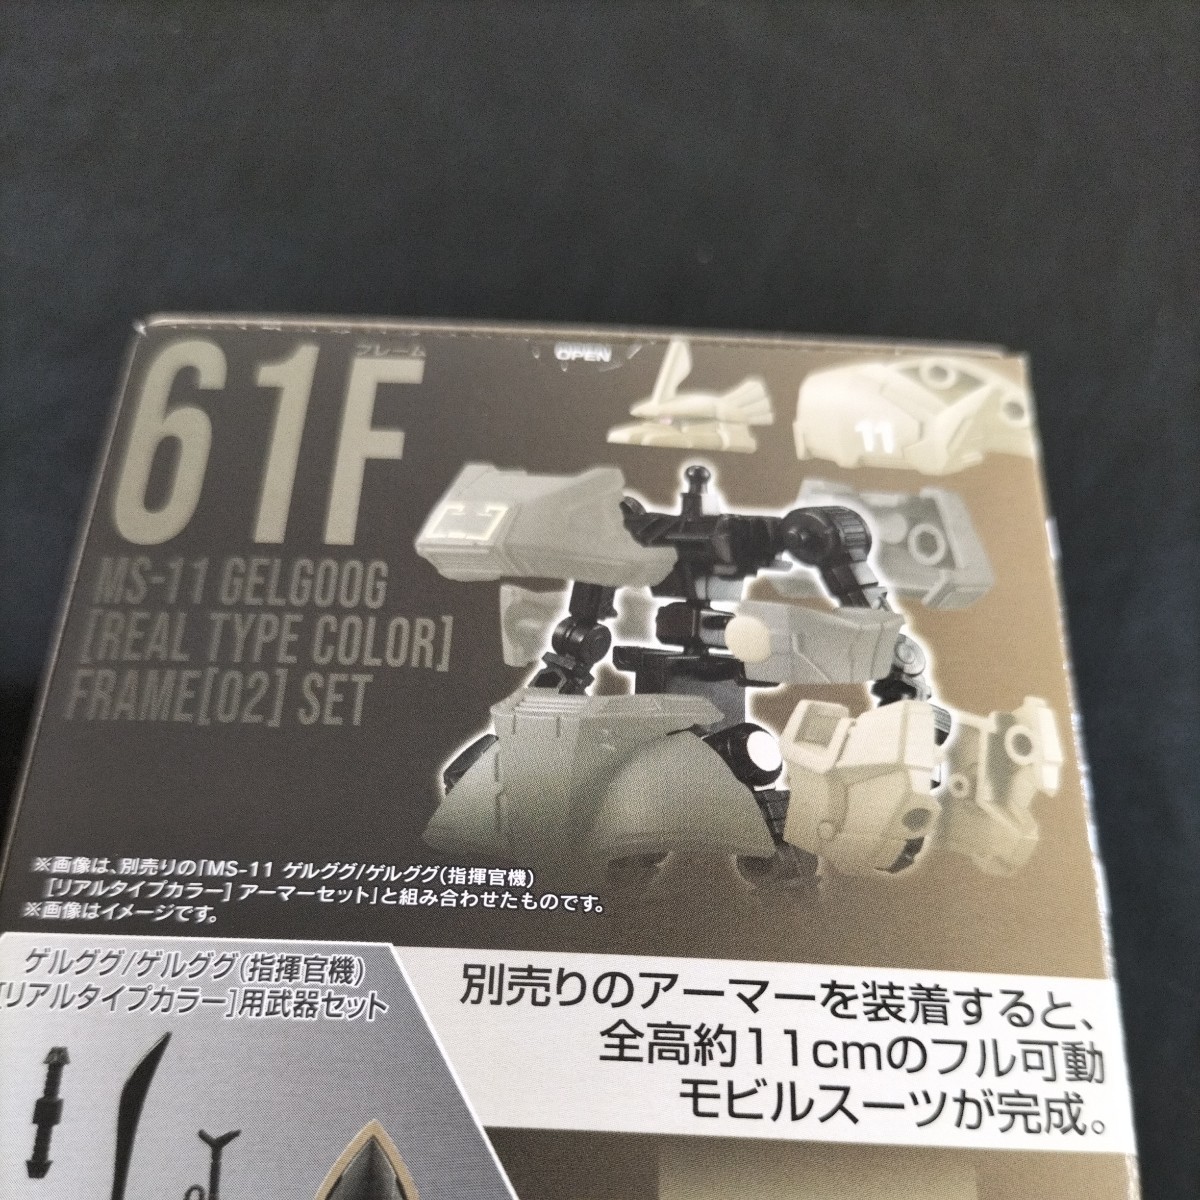 61F 機動戦士ガンダム GフレームFA REAL TYPE SELECTION MS-11 リアルタイプ カラー フレーム02 セット ガンプラ 新品 未開封